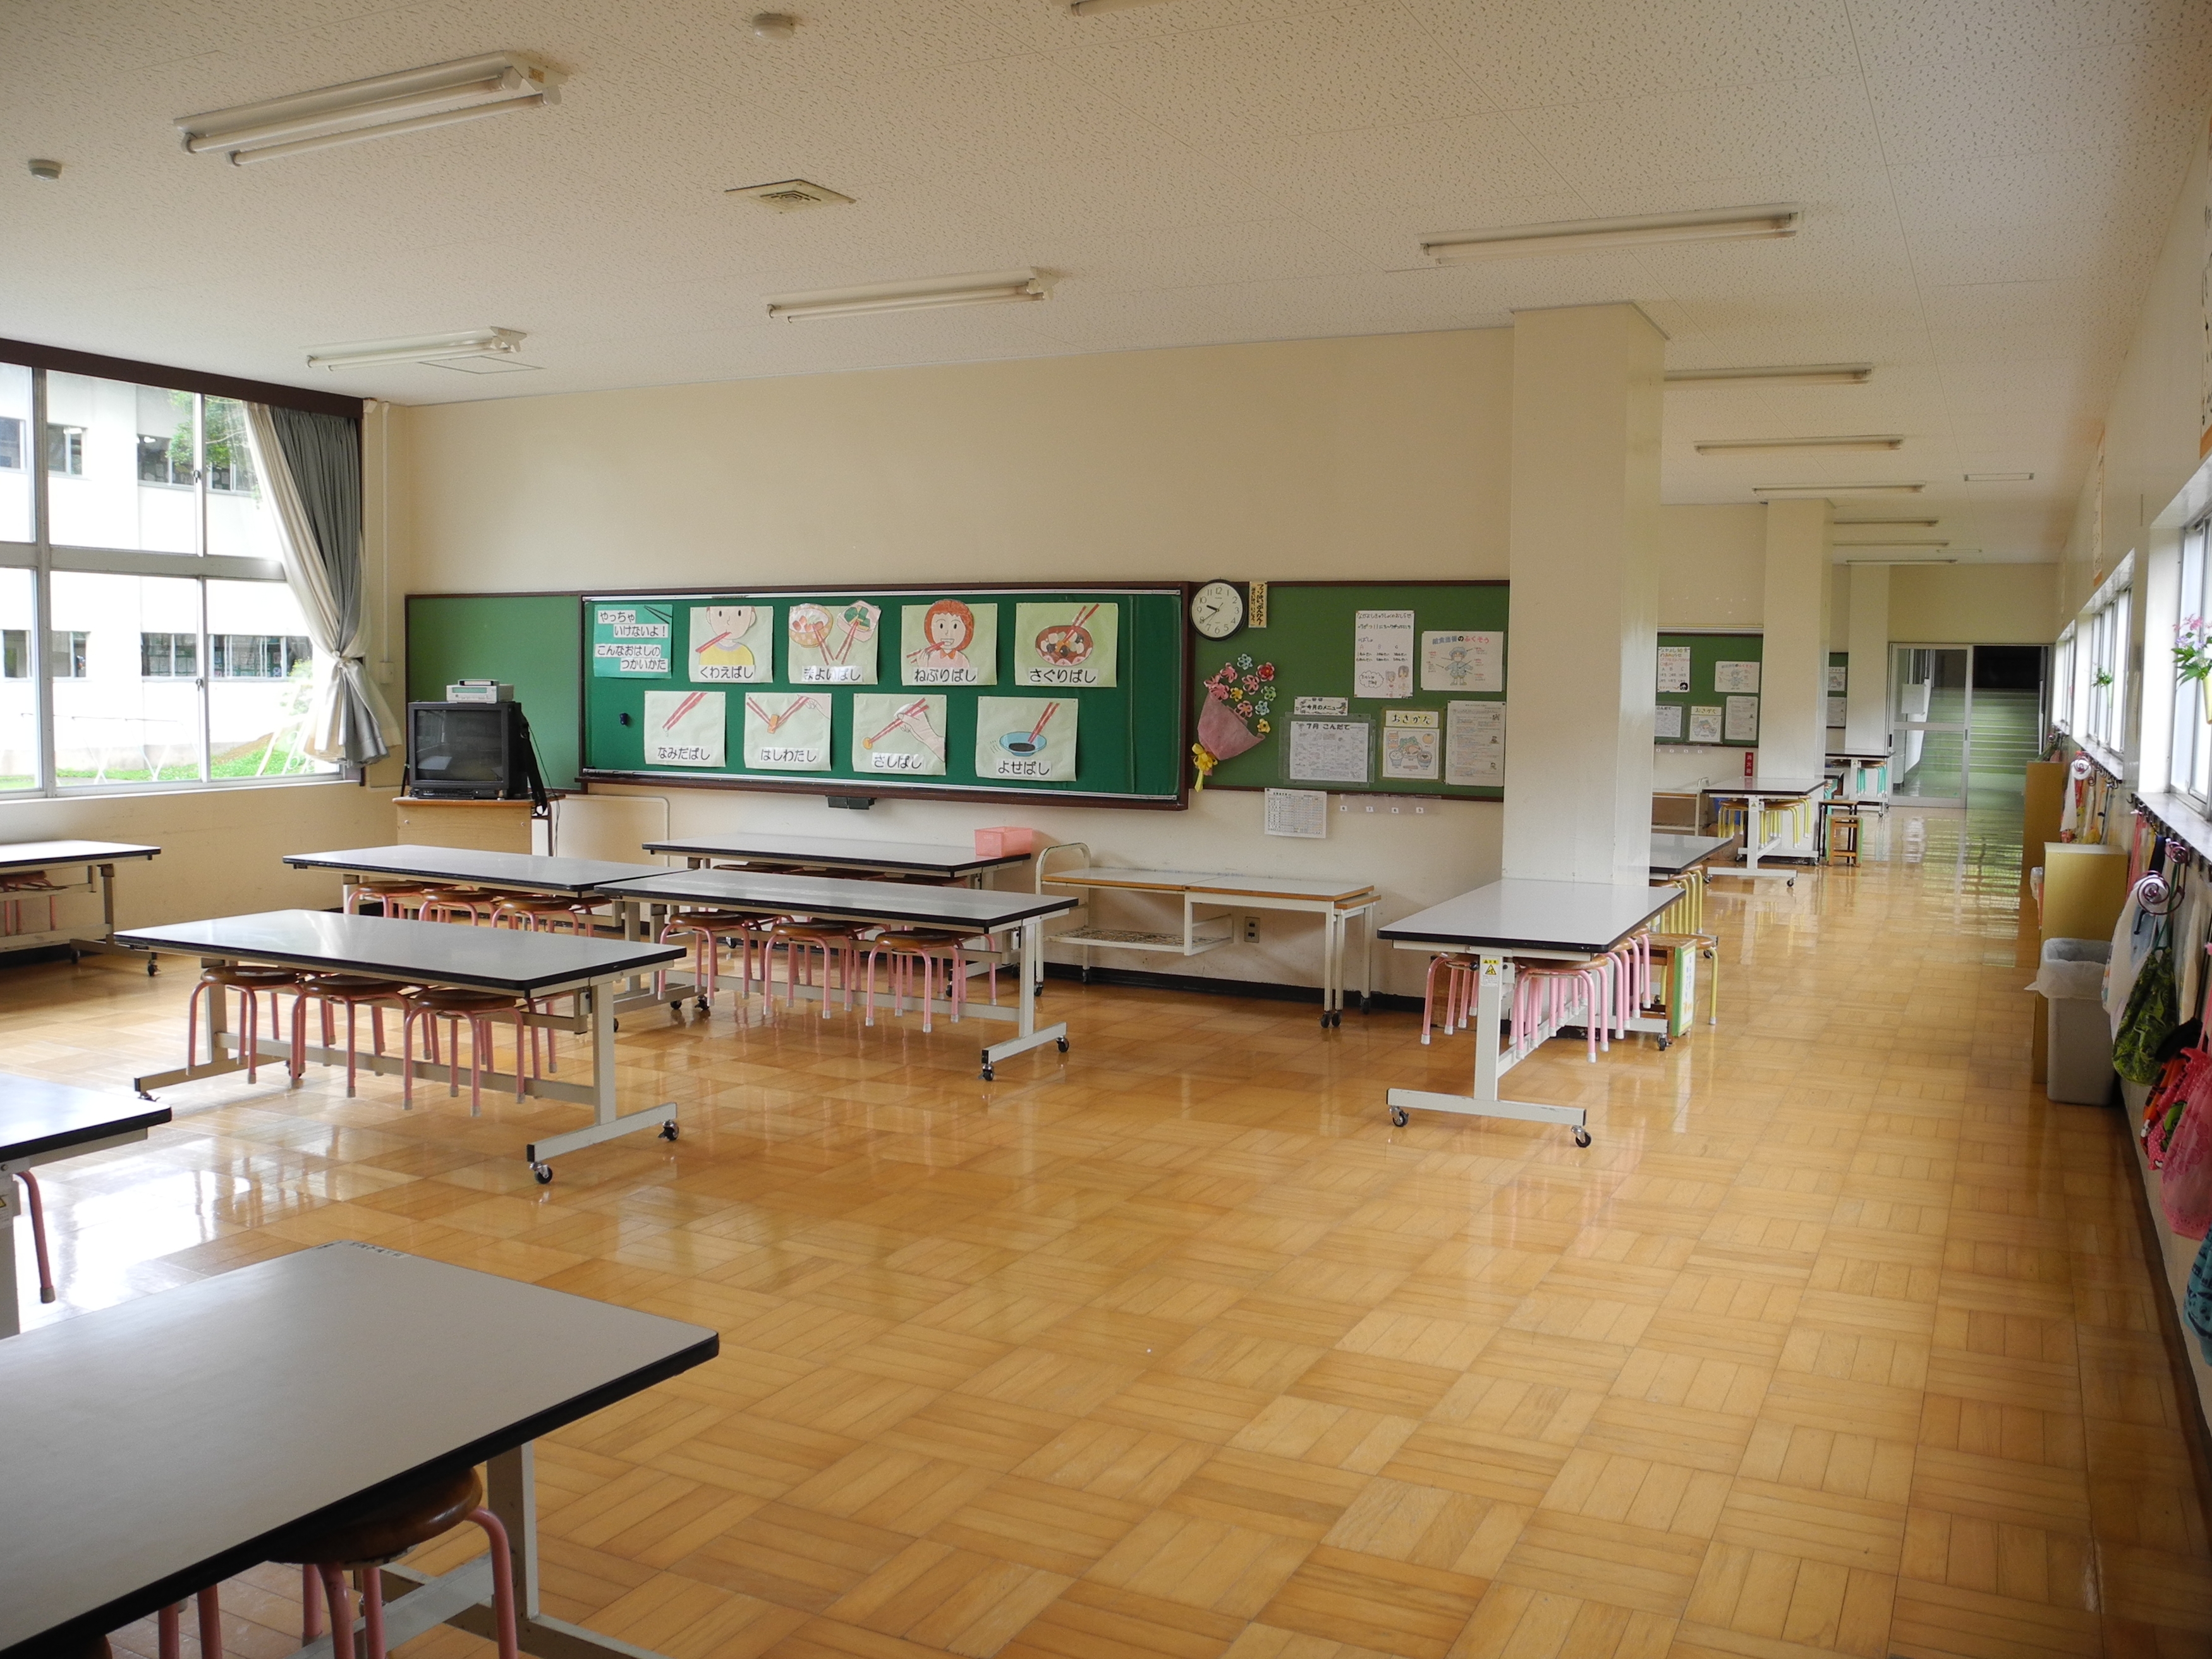 Фото класса в школе без людей